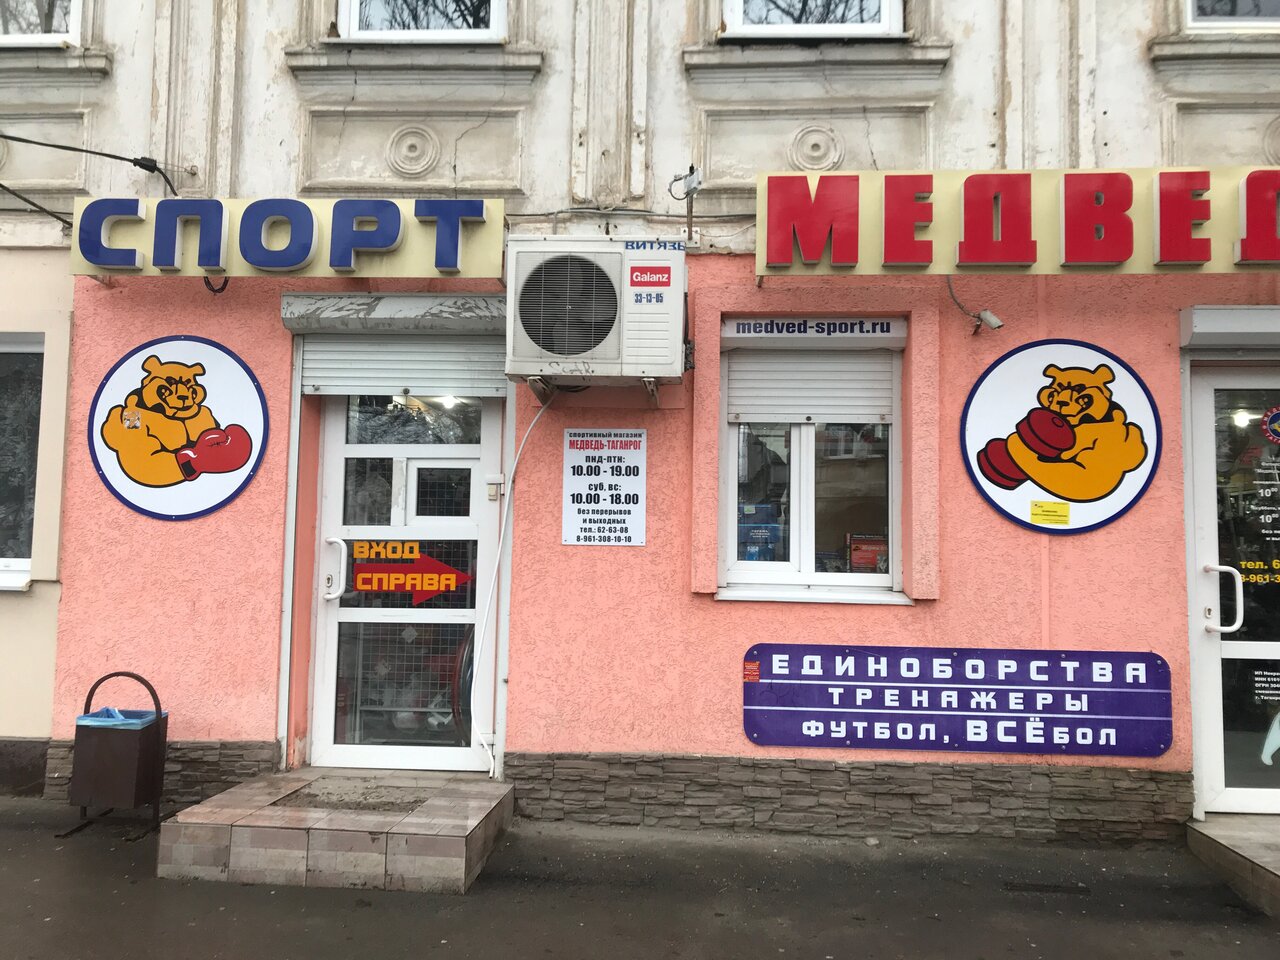 Магазин Медведь Челябинск Каталог Цены